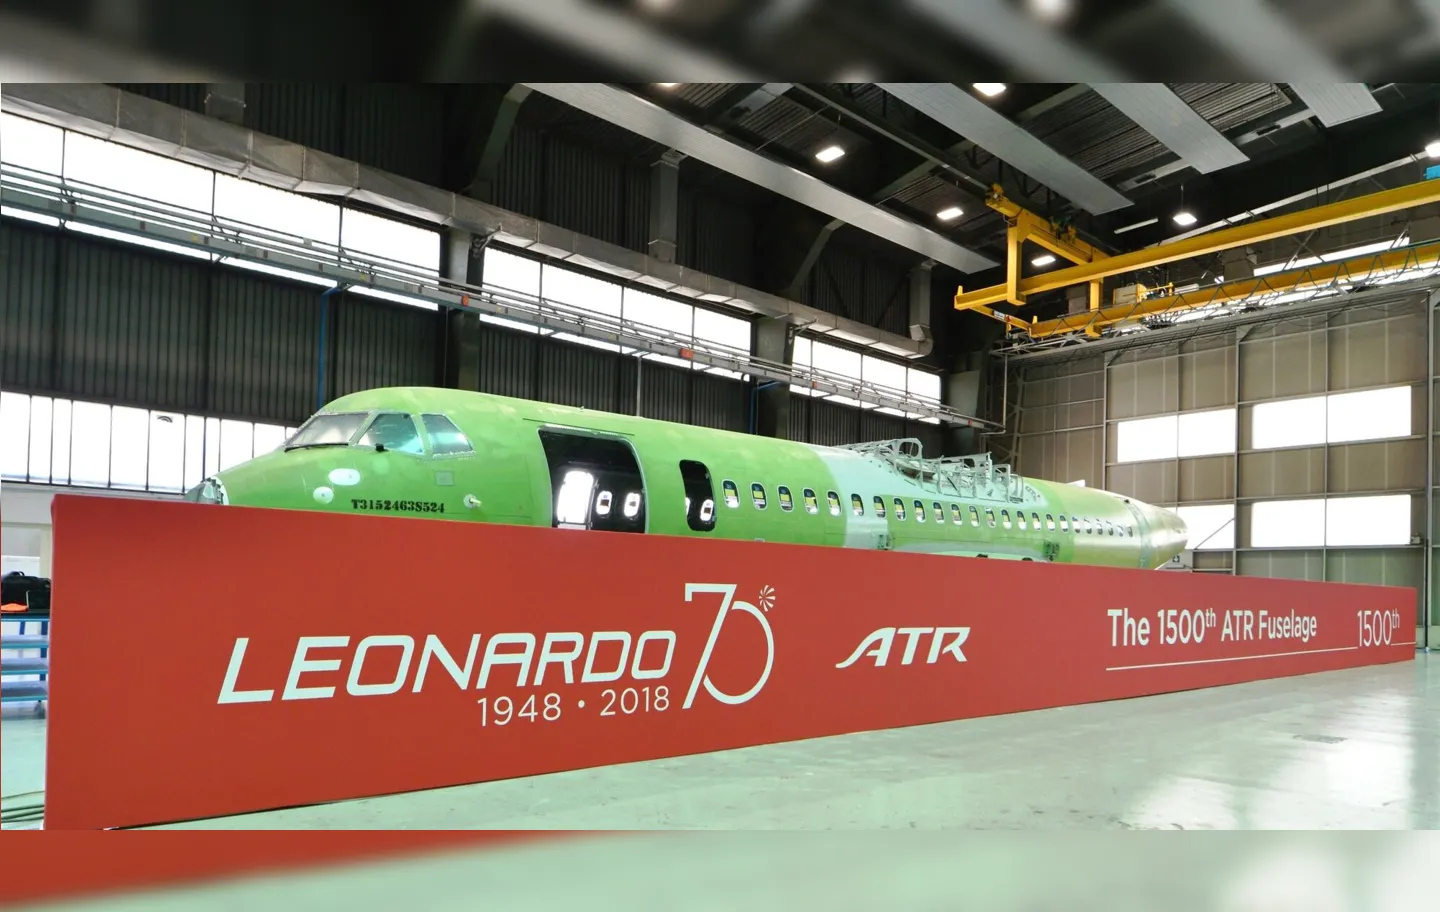 A Leonardo é responsável pela fabricação da aeronave ATR